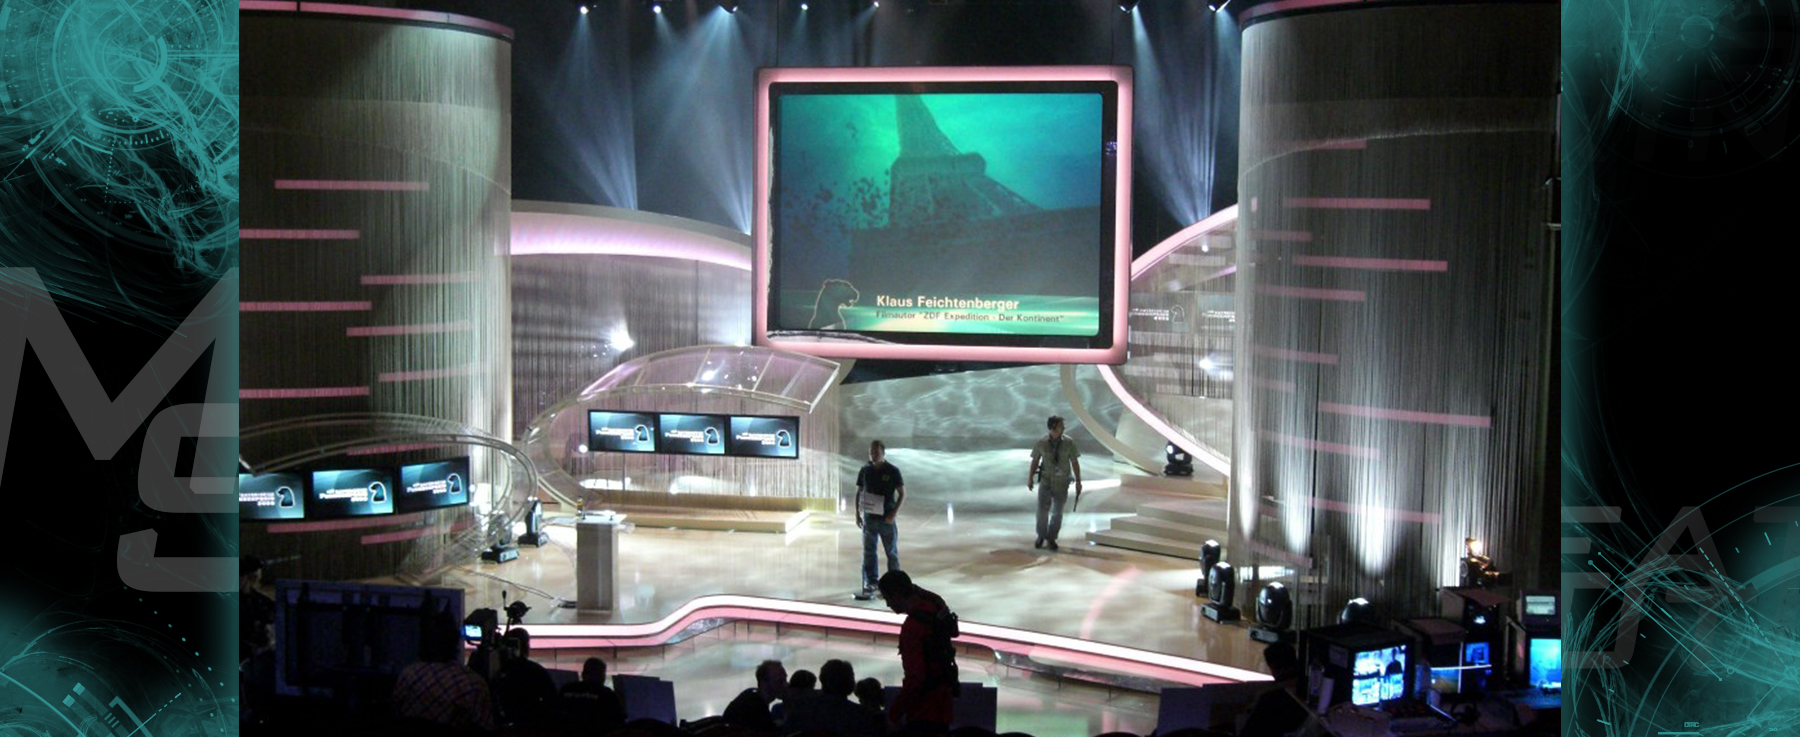 Bavarian TV Award 2007